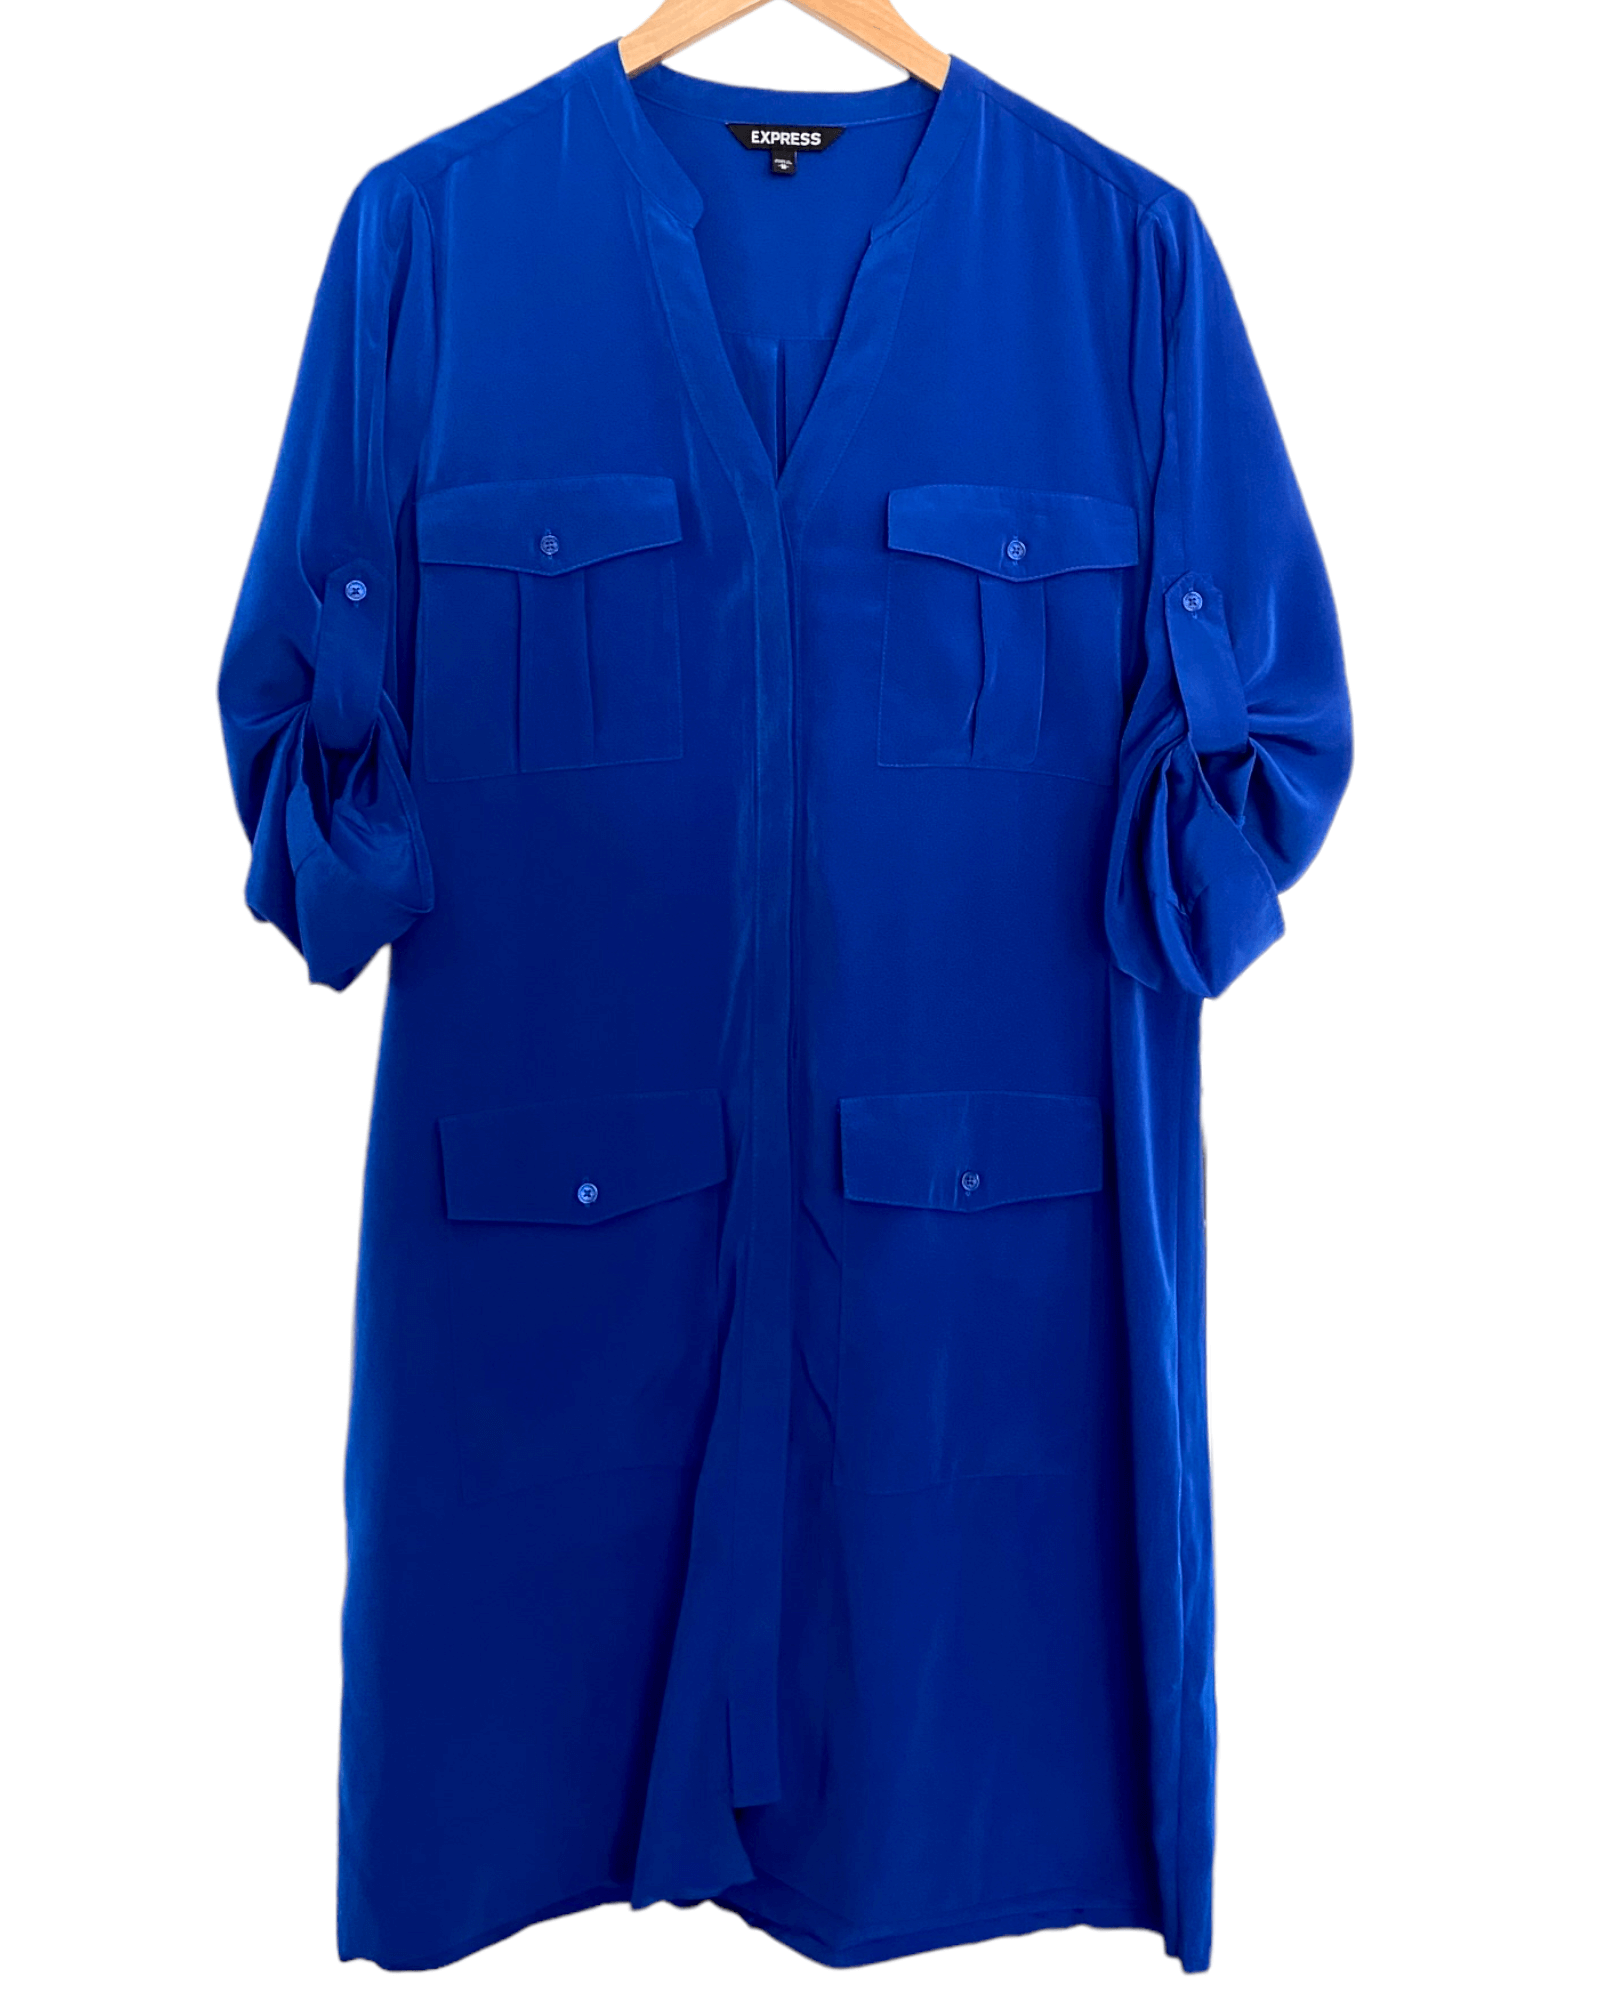 Bright Winter EXPRESS cobalt blue patch pocket shirt dress